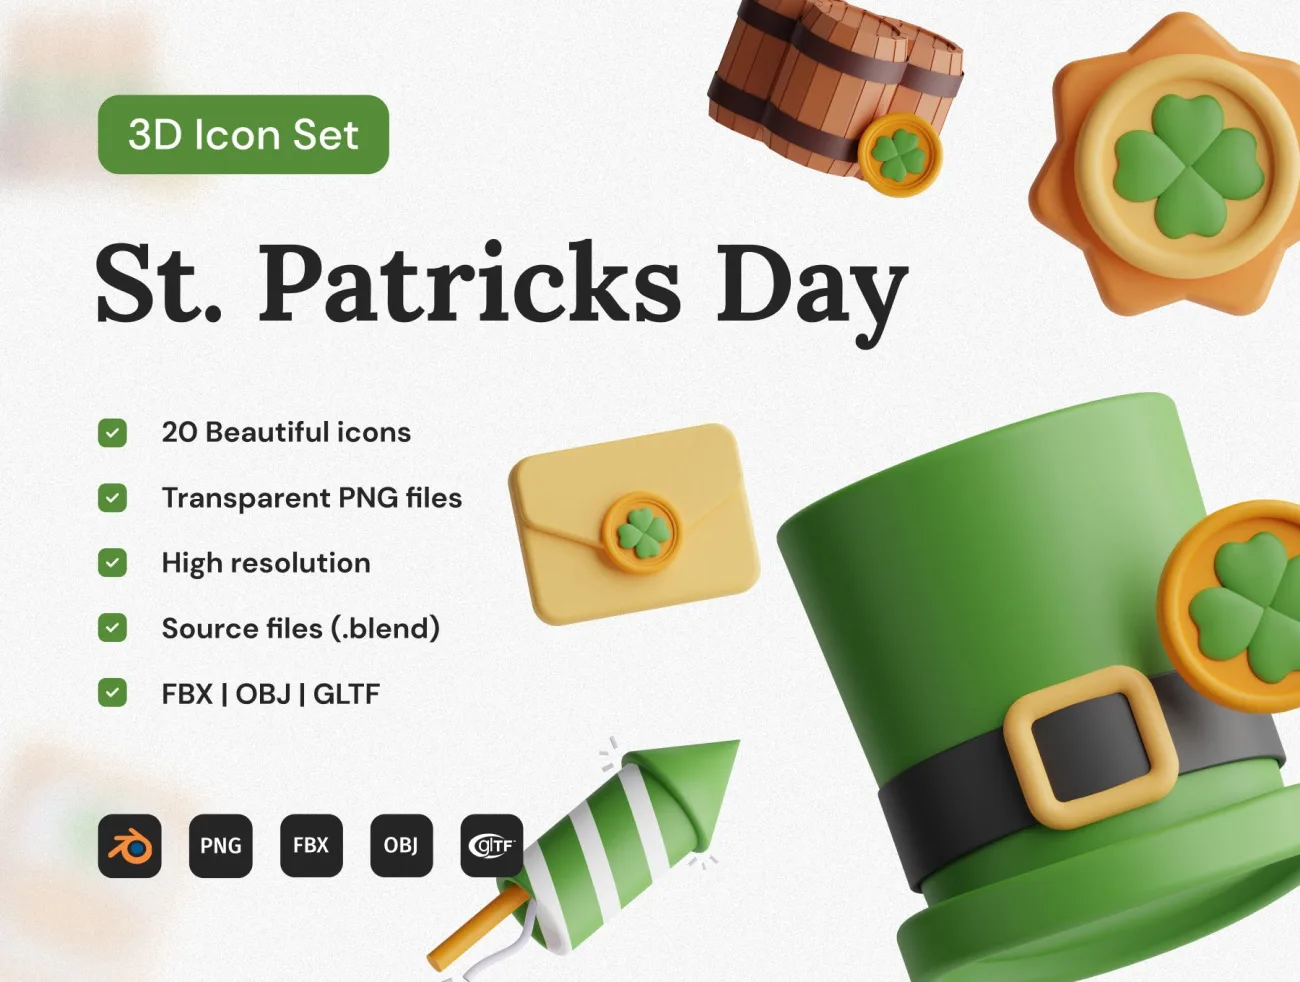 圣帕特里克音乐文化节3D图标集 St. Patricks Day 3D Icon Set缩略图到位啦UI